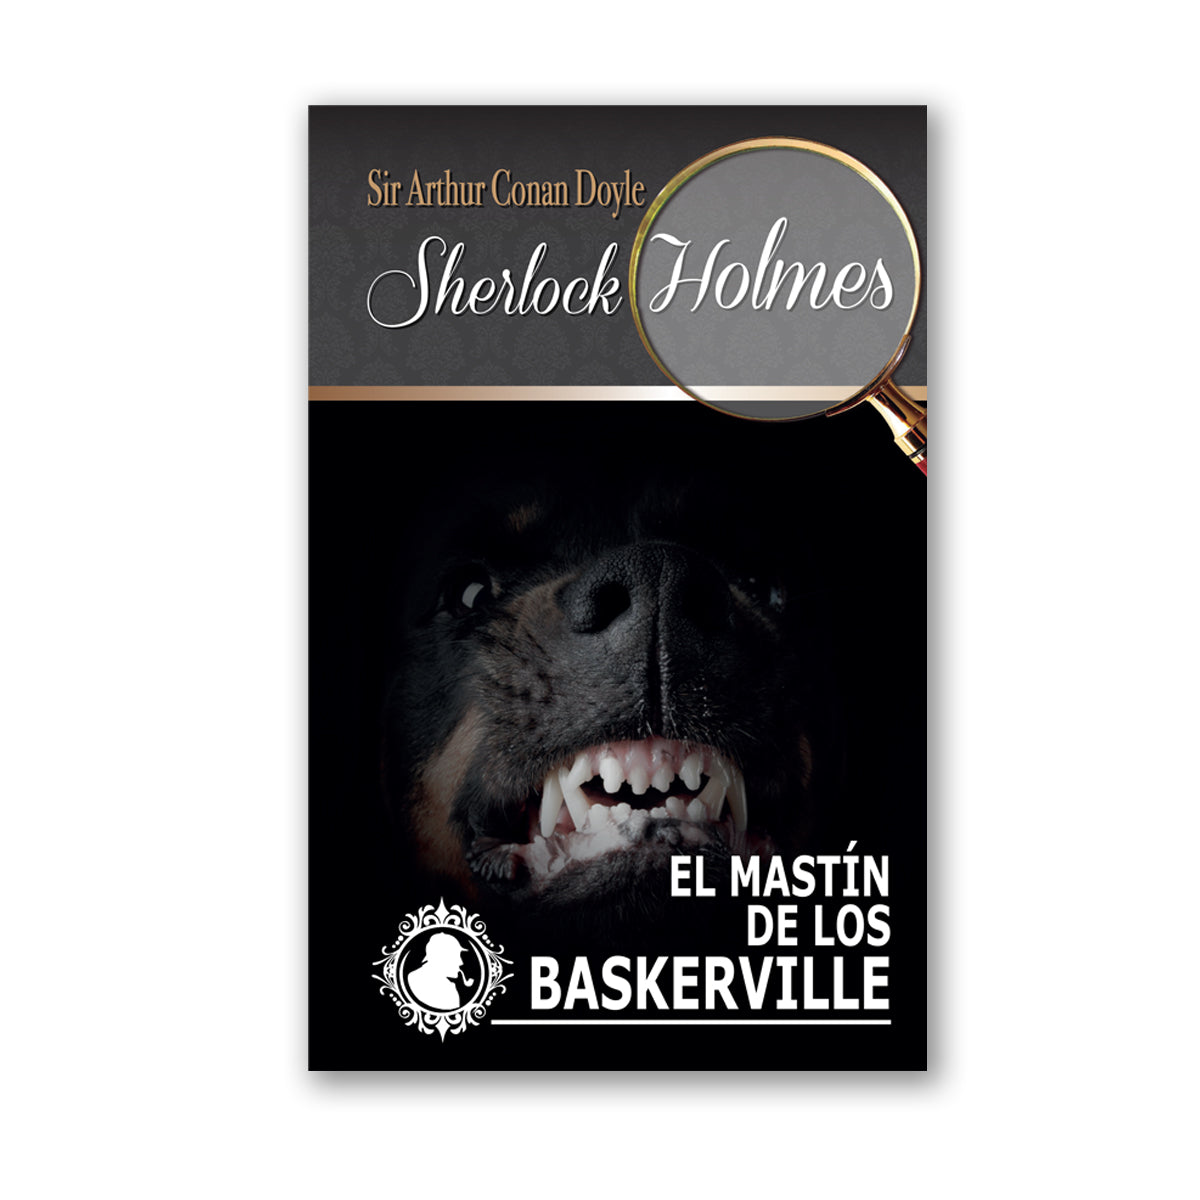 Colección Sherlock Holmes "El Mastín de los Baskerville"